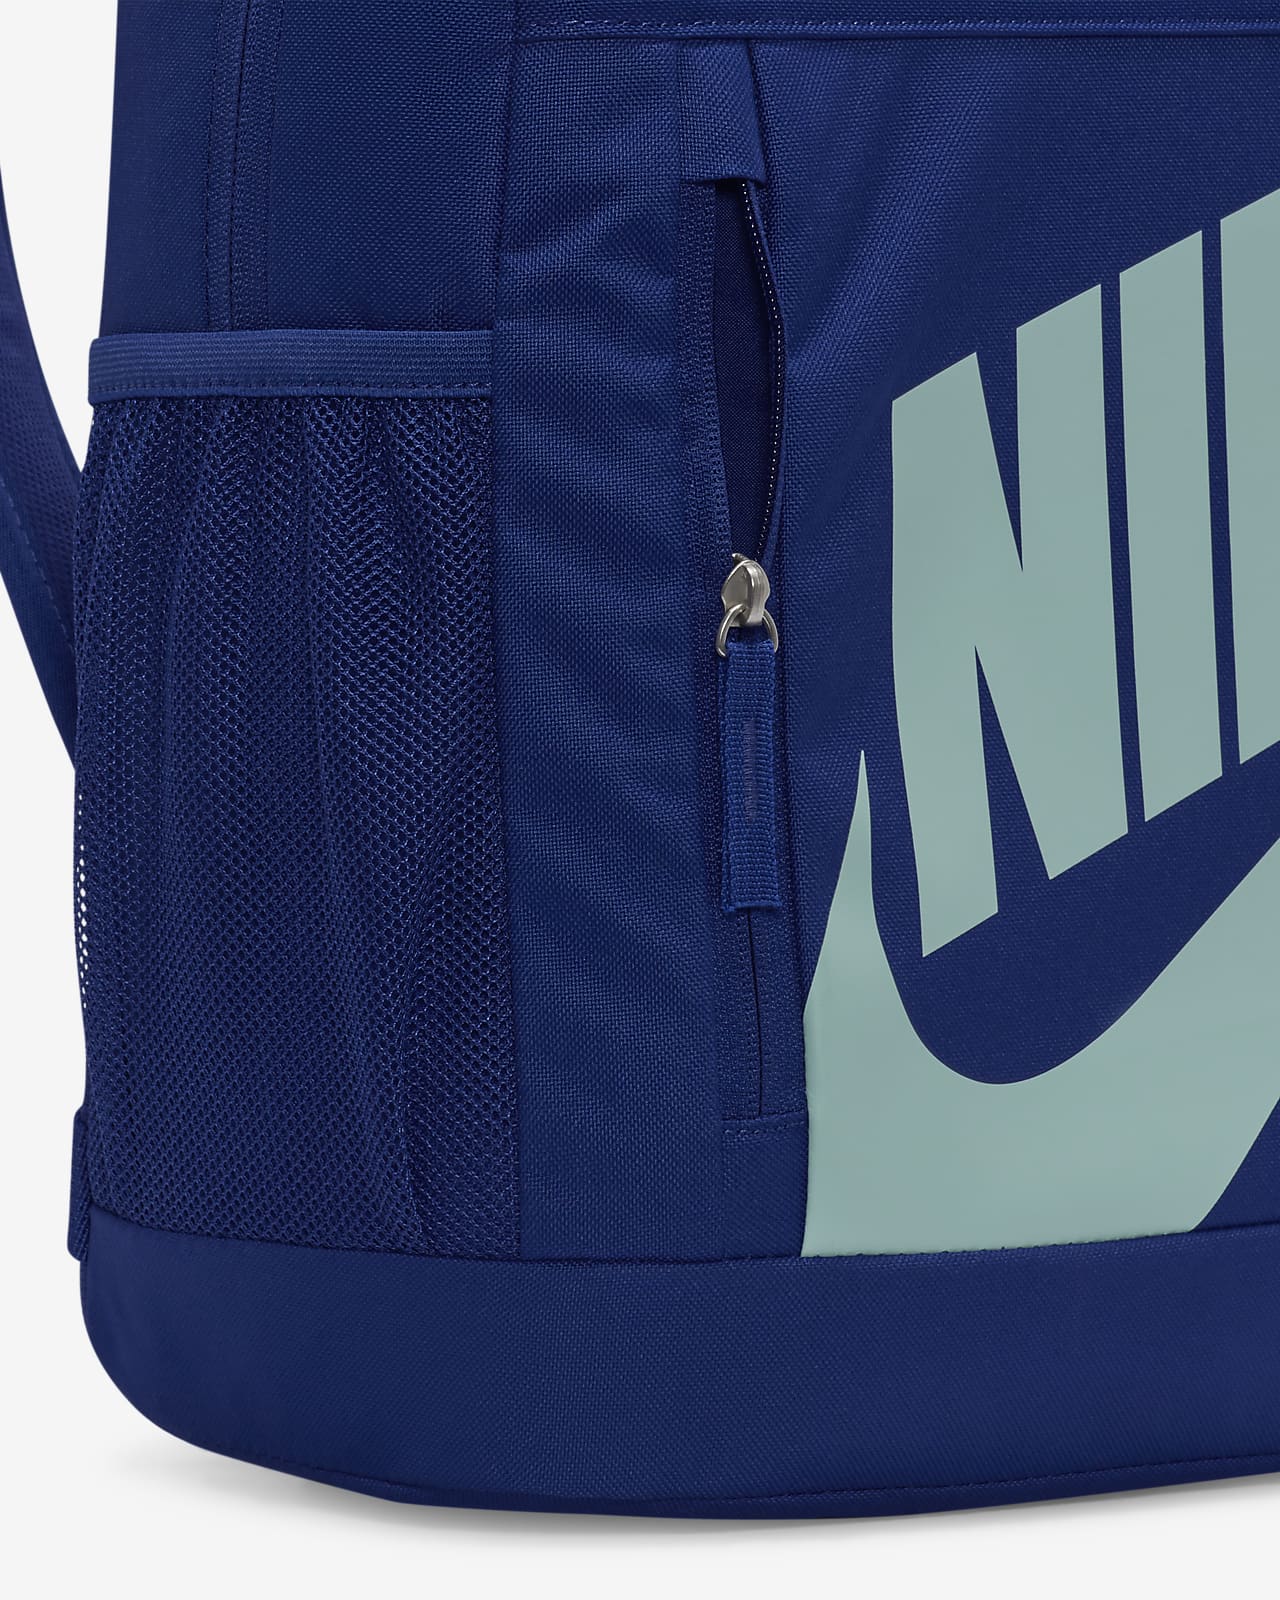 Kids' Nike Air Backpack (20L)